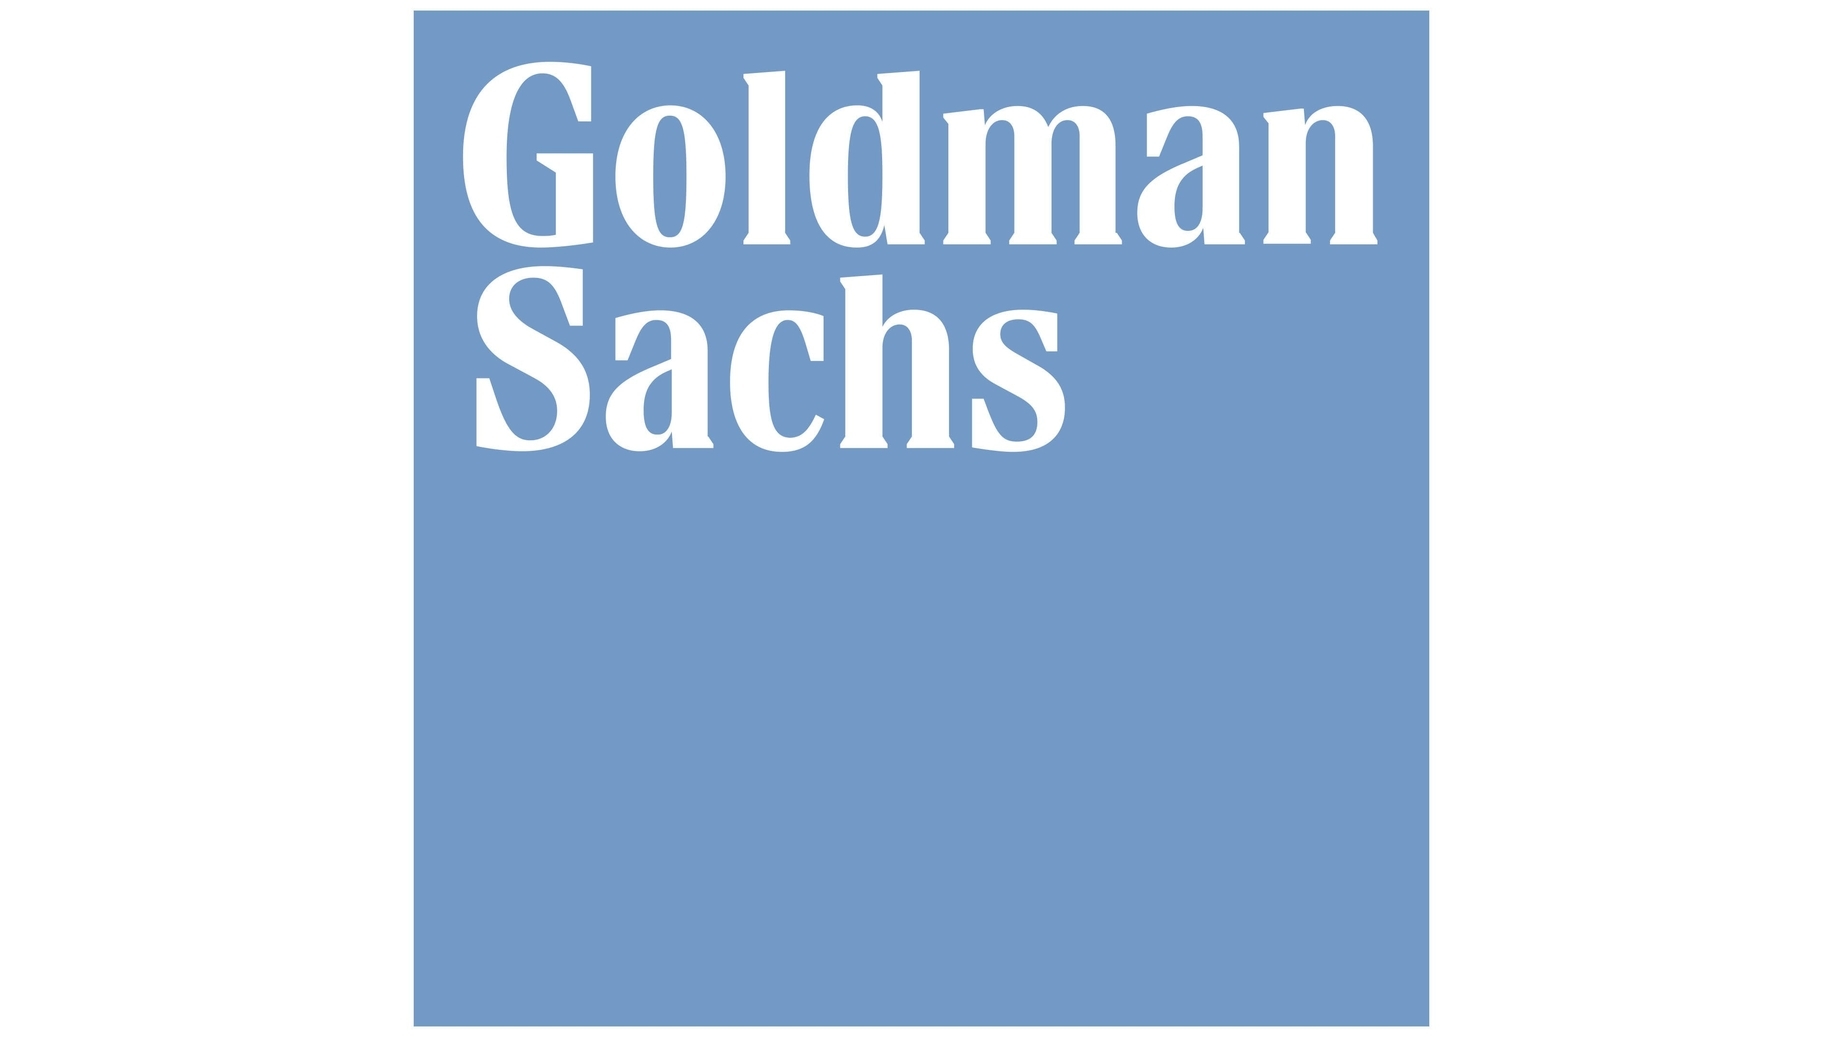 Goldman sachs sign 2020 present